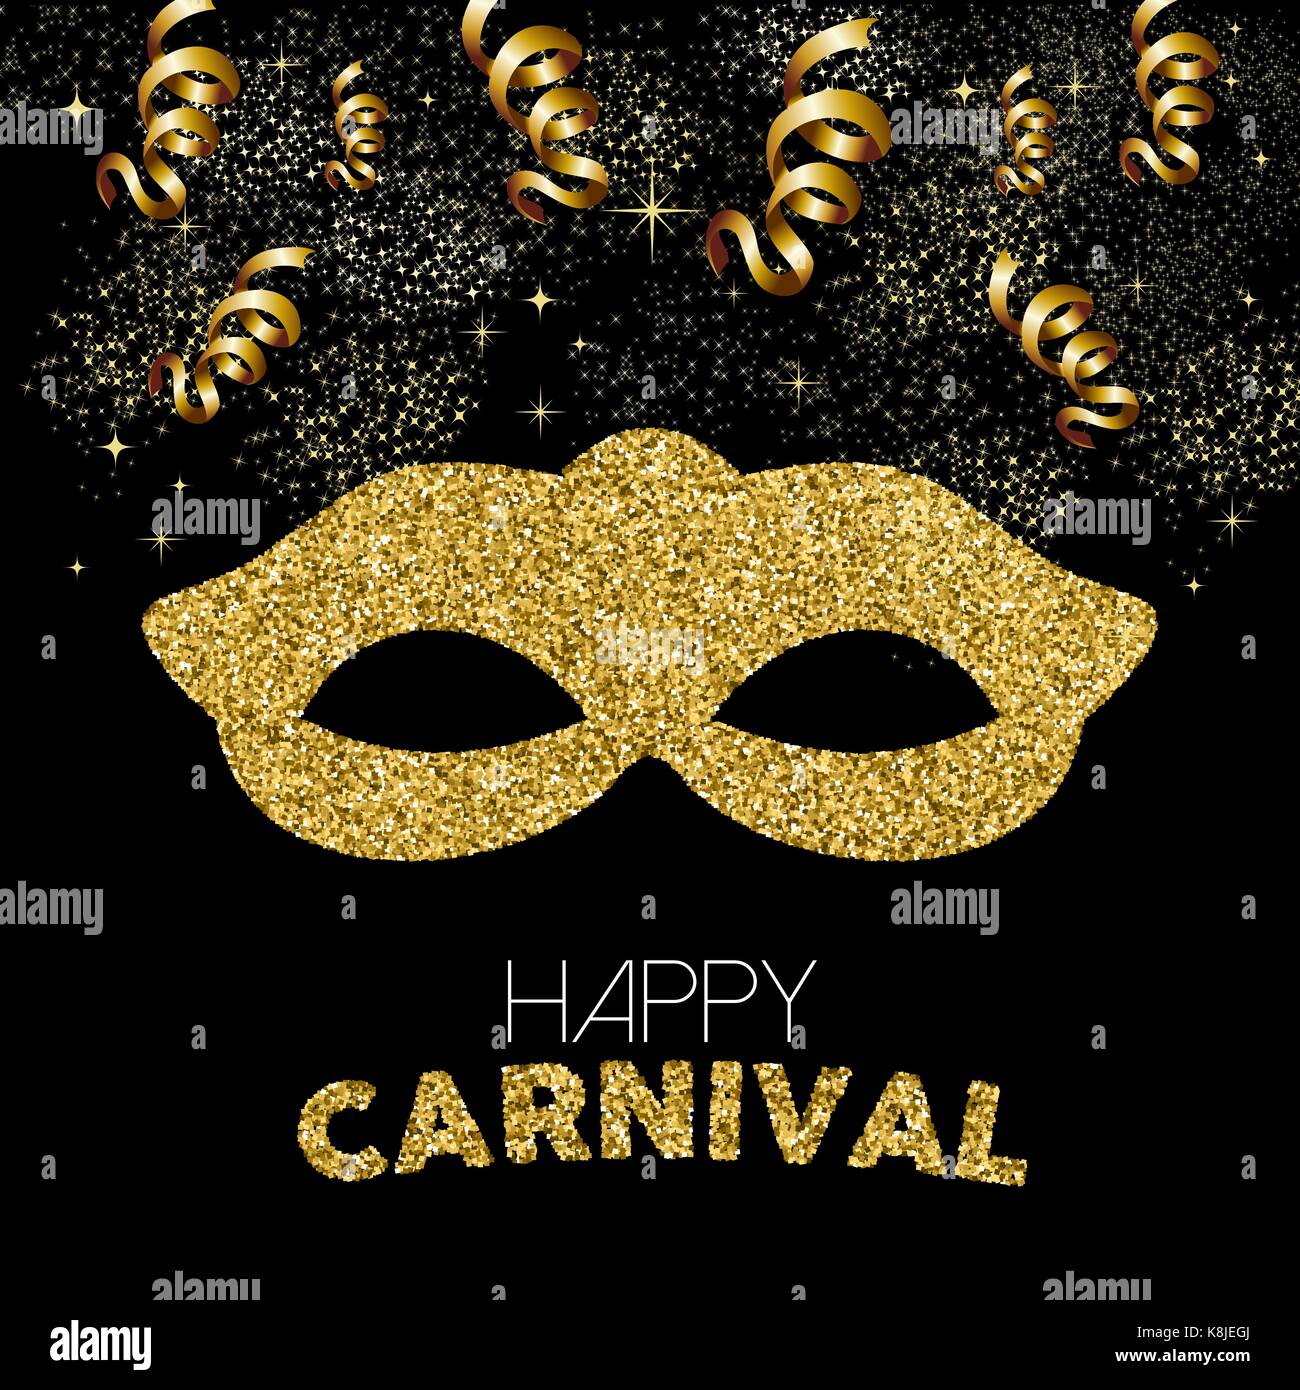 Gold Karneval Design. Kostüm Maske aus goldenen glitter mit Text zitieren, party Luftschlangen und Konfetti. EPS 10 Vektor. Stock Vektor